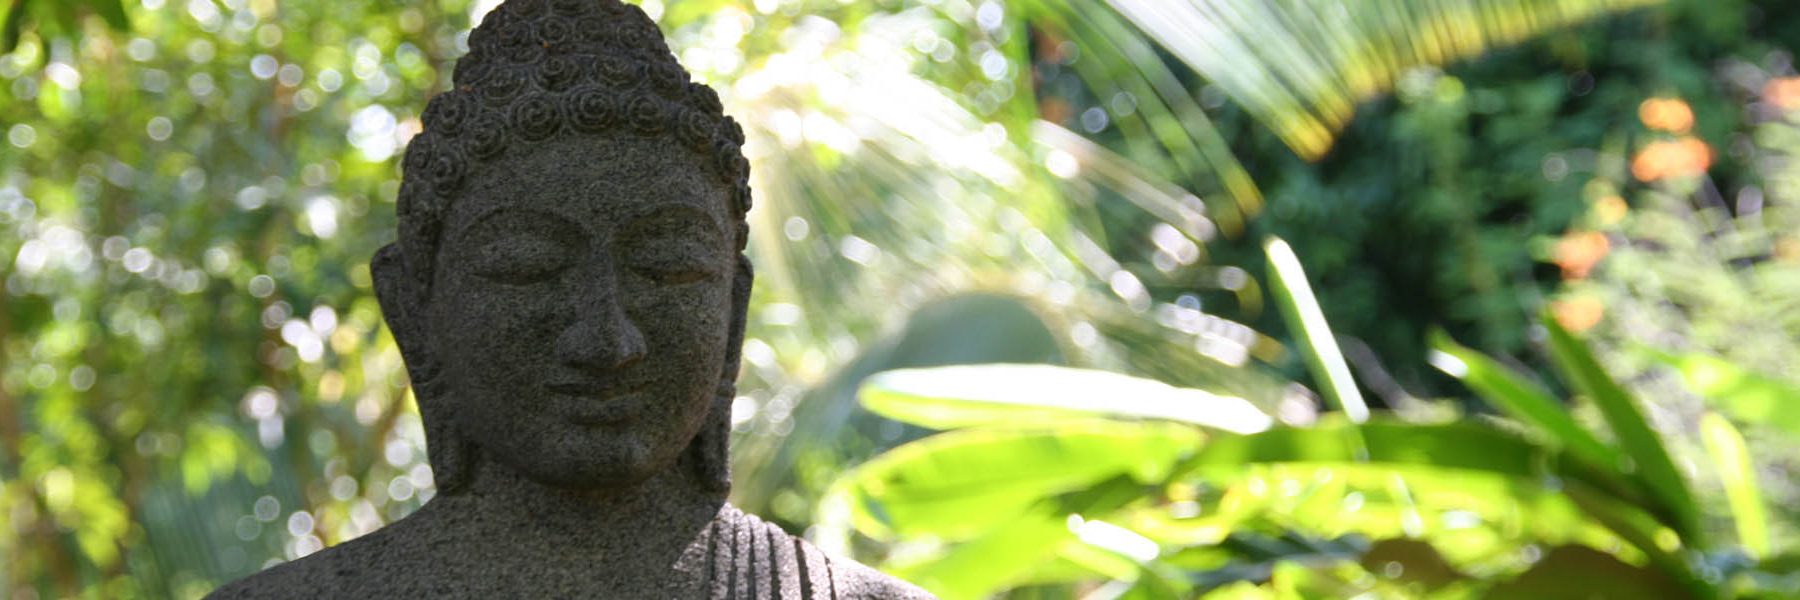 Startseiten-Slider-Buddha